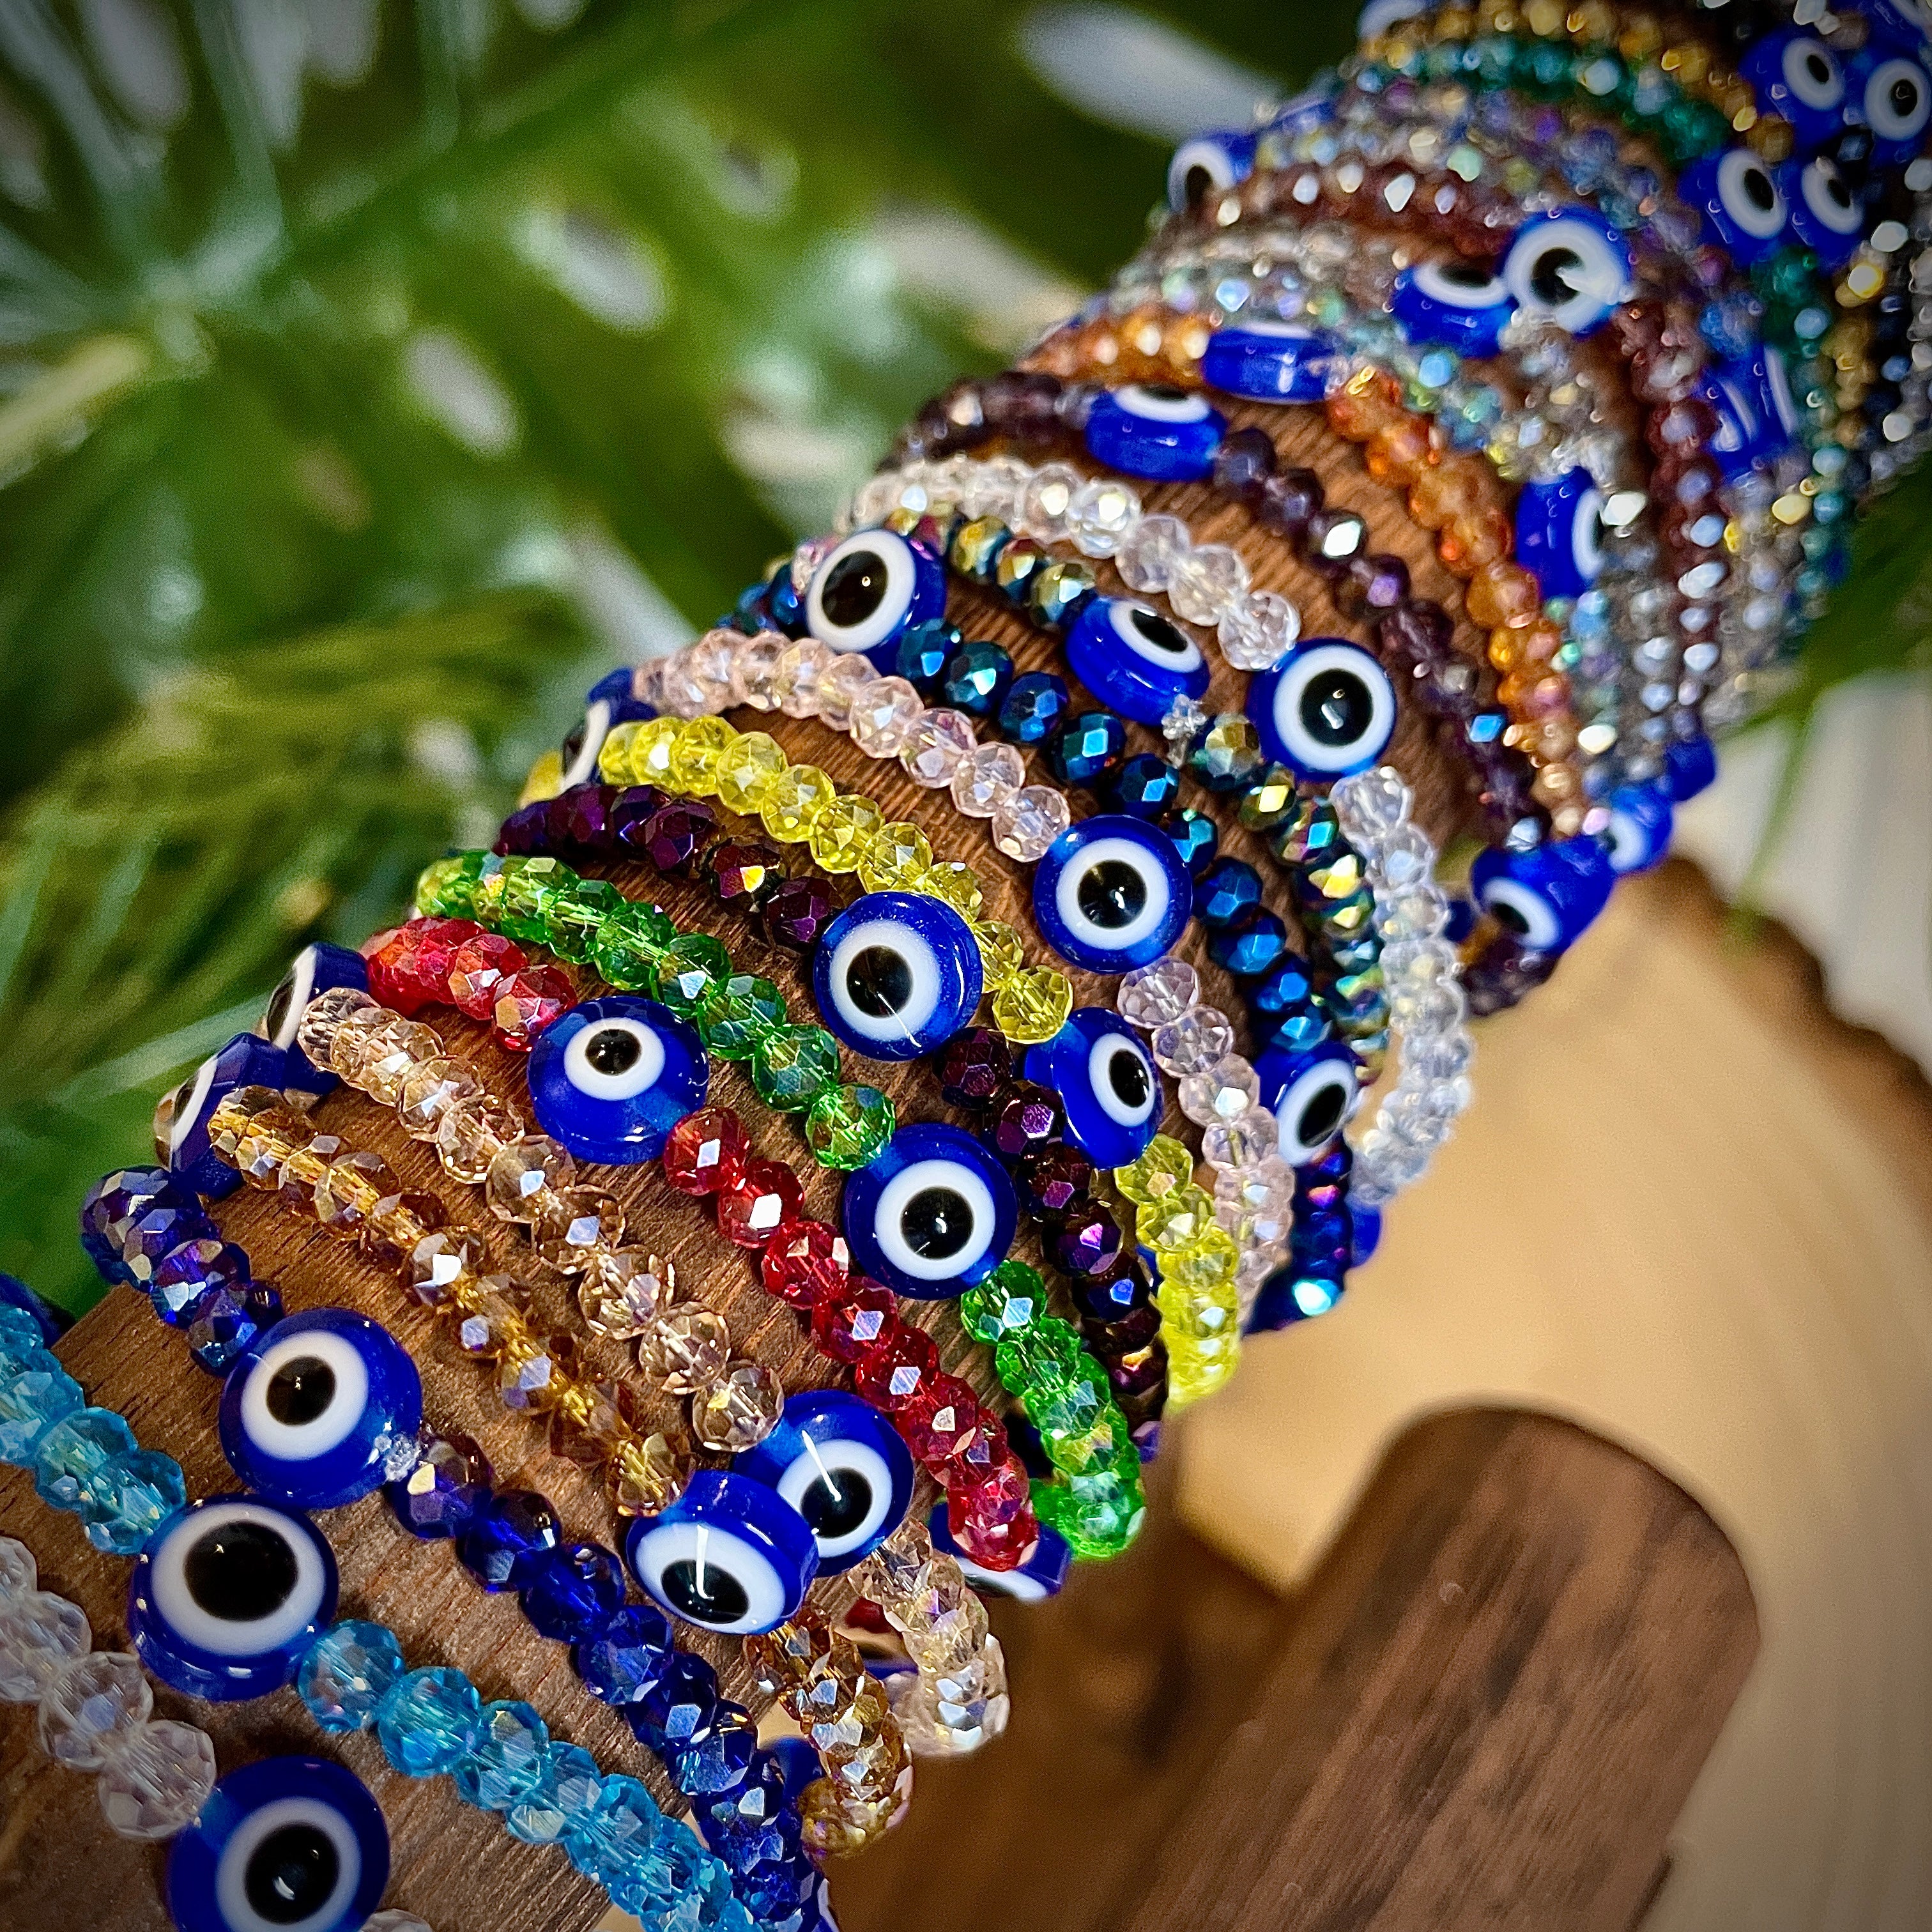 Handmade Evil Eye Bracelets Beads (Navy Blue)